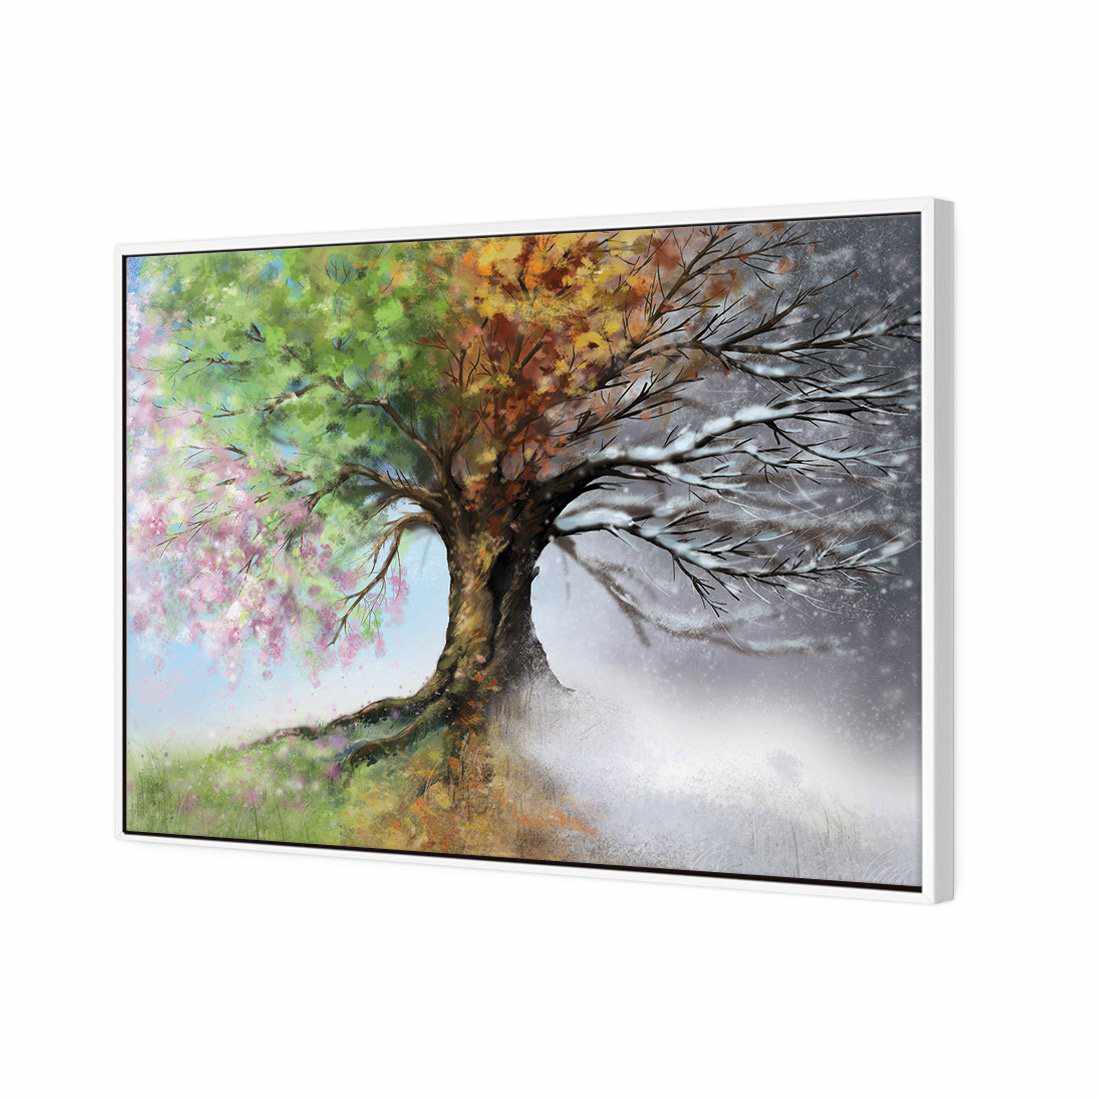 Mystical Tree Canvas Art-Canvas-Wall Art Designs-45x30cm-Canvas - White Frame-Wall Art Designs